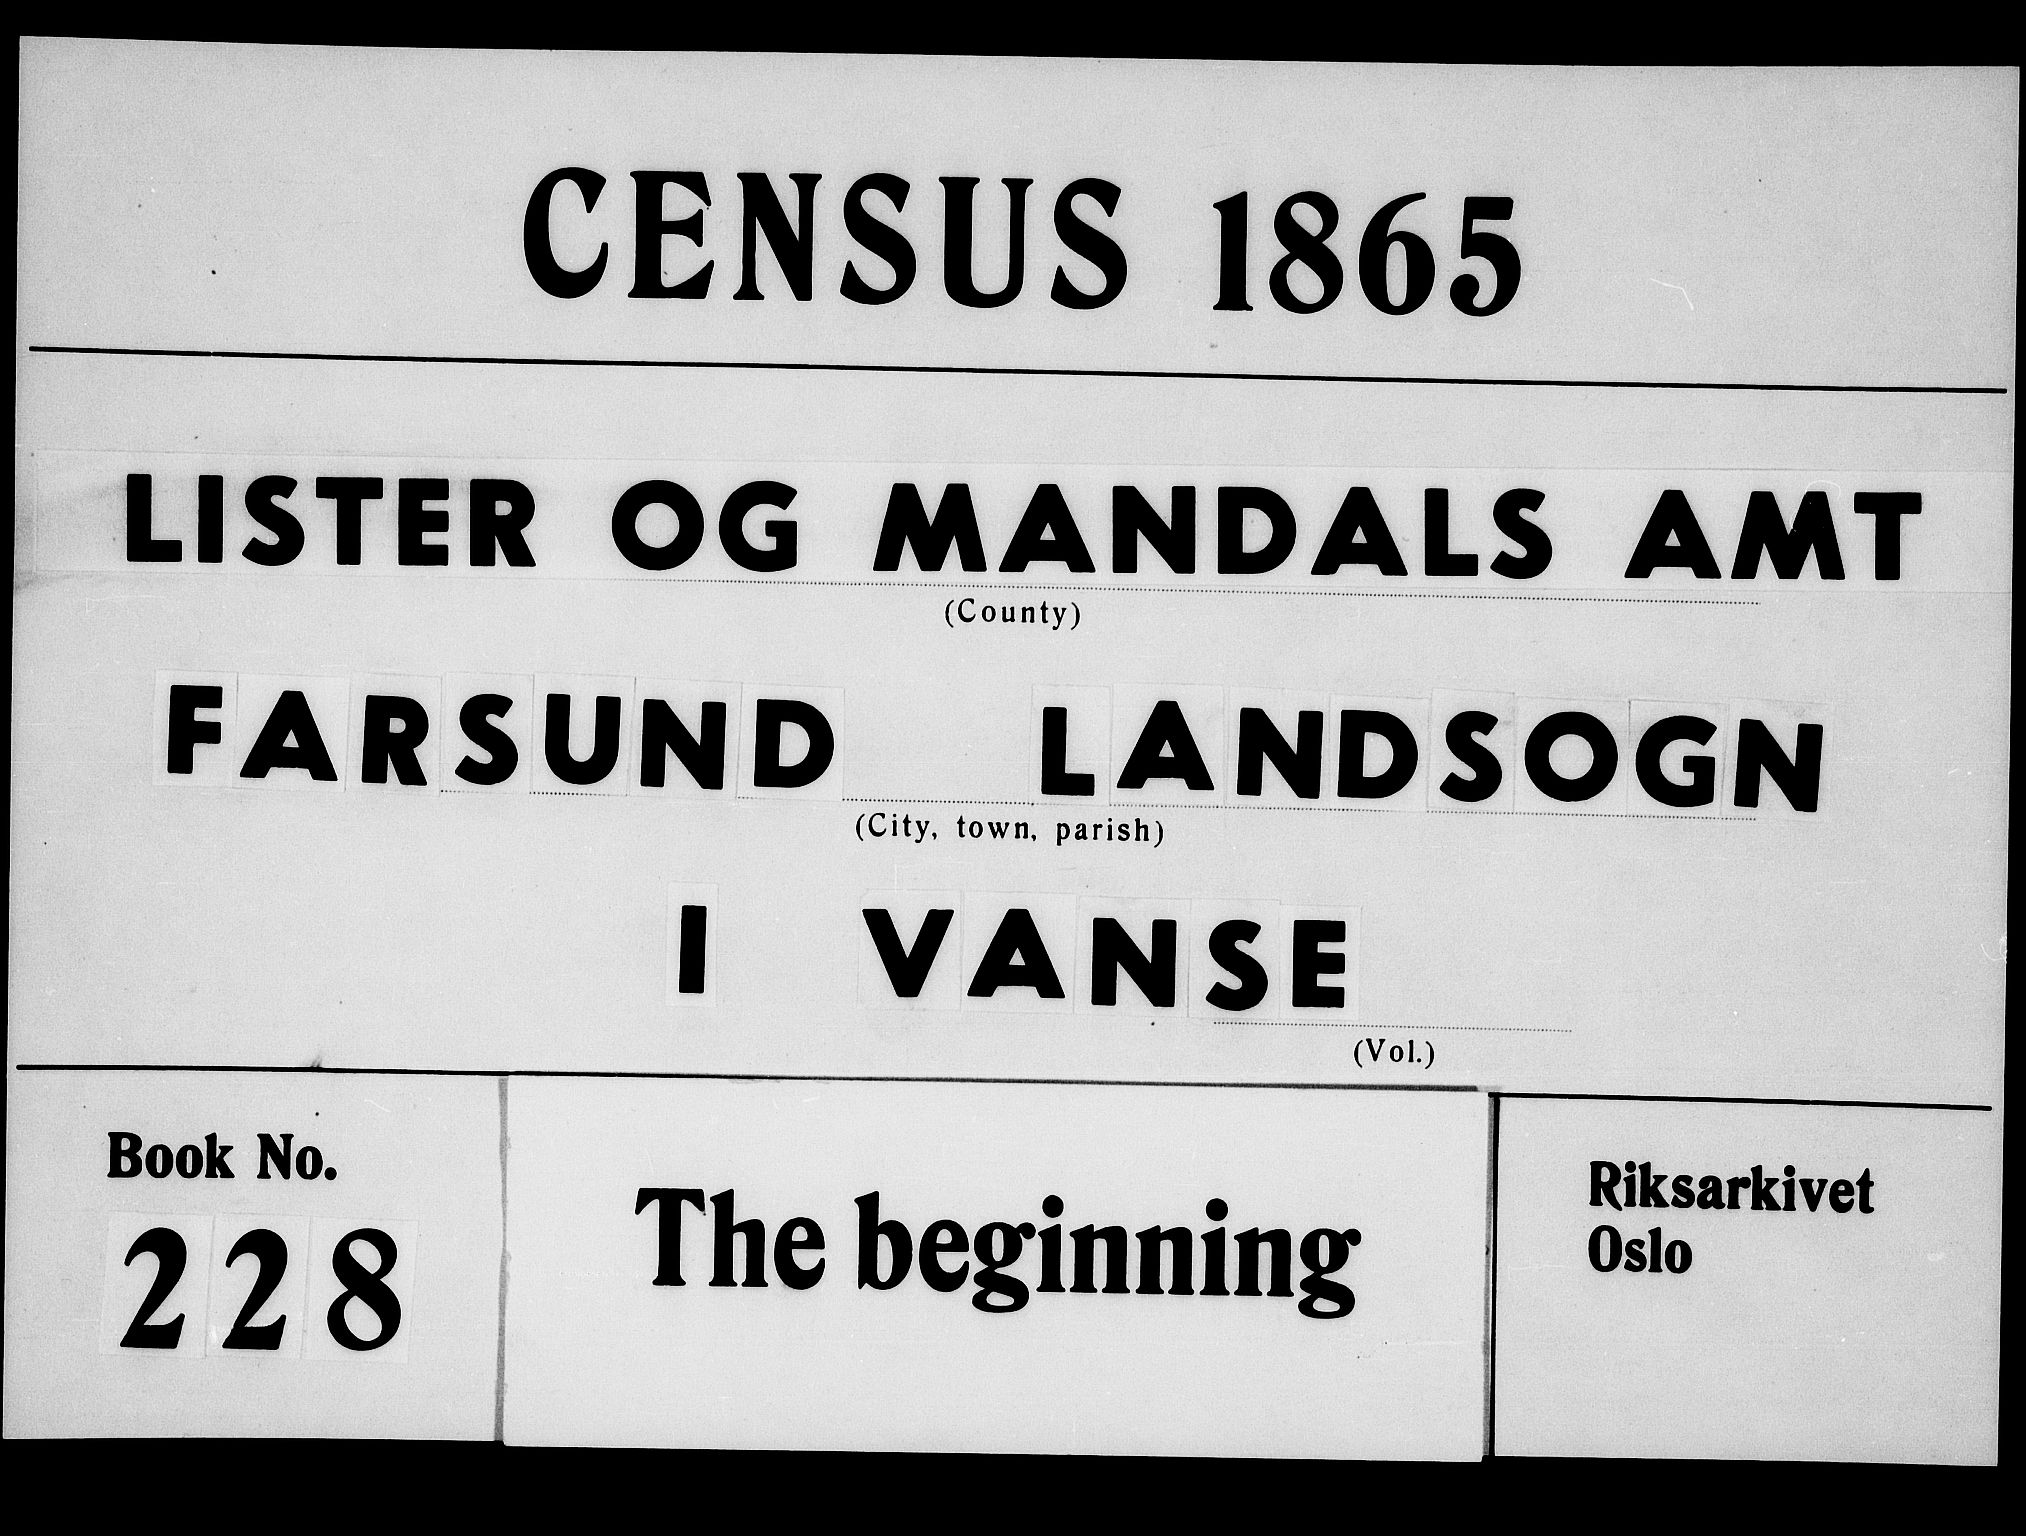 RA, Folketelling 1865 for 1041L Vanse prestegjeld, Vanse sokn og Farsund landsokn, 1865, s. 1